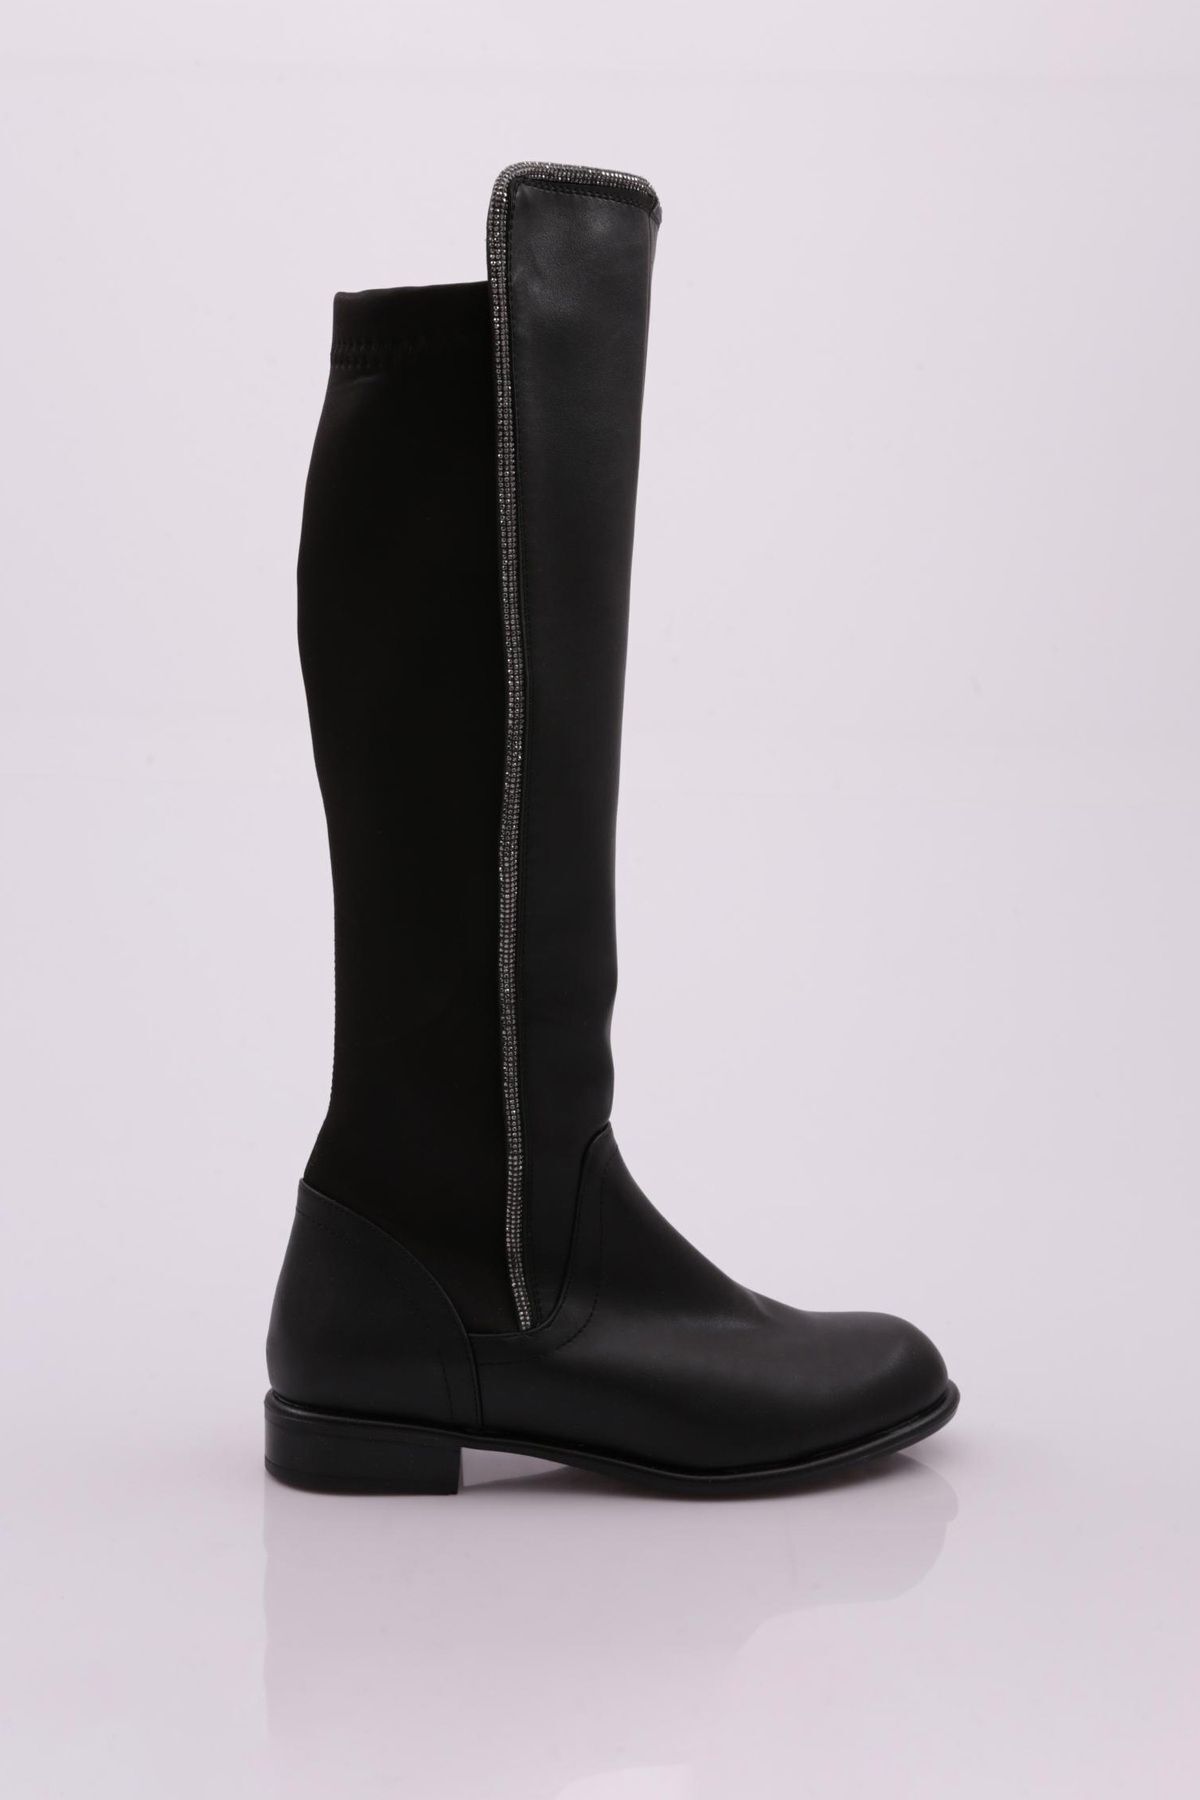 Dgn 508-22k Kadın Arkası Stretch Yan Taşlı Şerit Knee High Flats Çizme Siyah